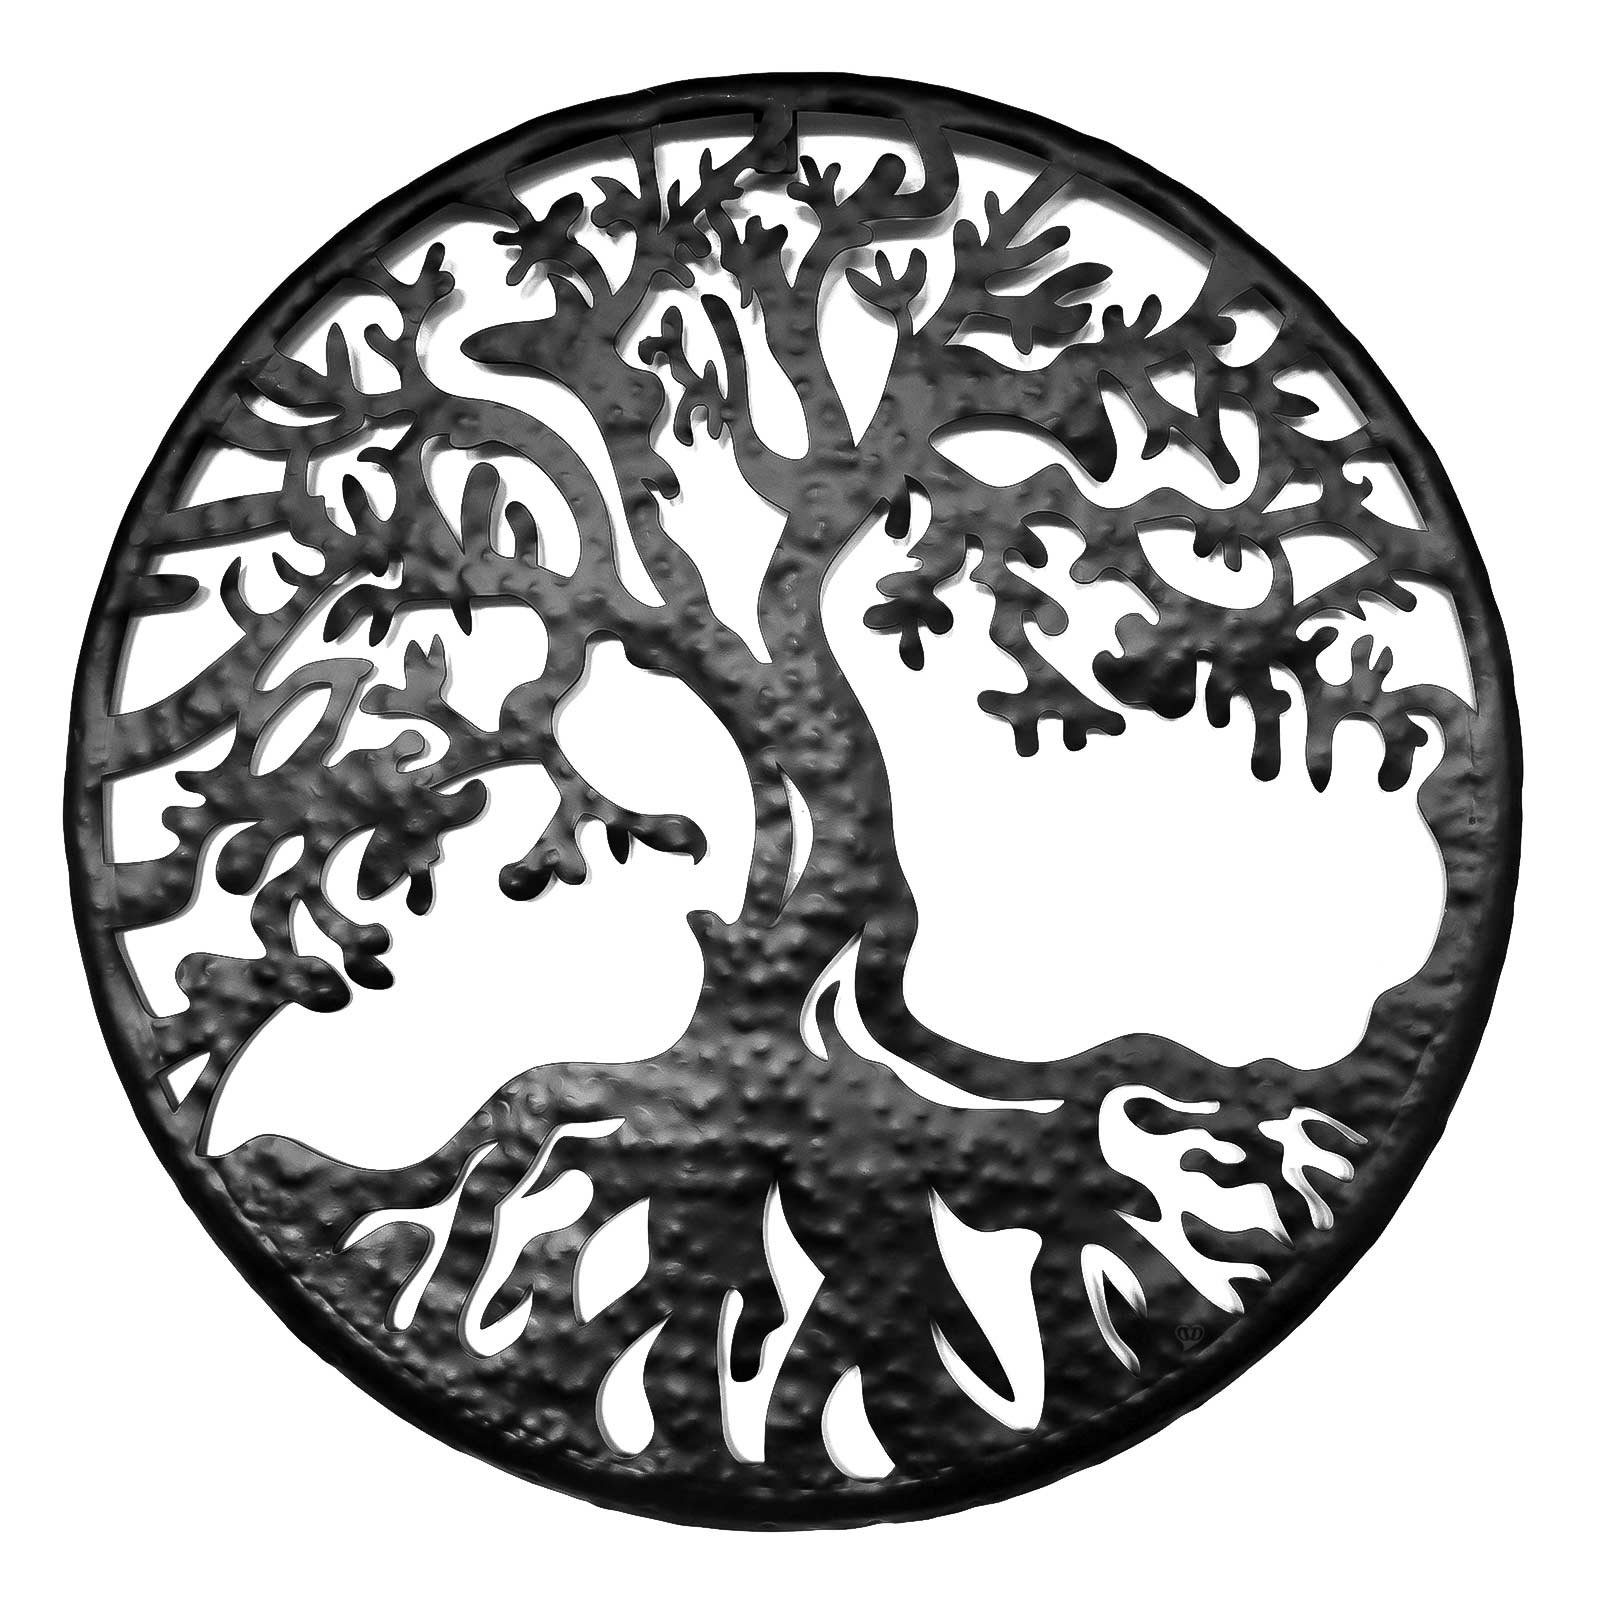 Dekohänger Baum 1 Eisen Vintage Baum rund Variantenwahl, cm Ø 54 maDDma cm x 1 schwarz Wand-Ornament